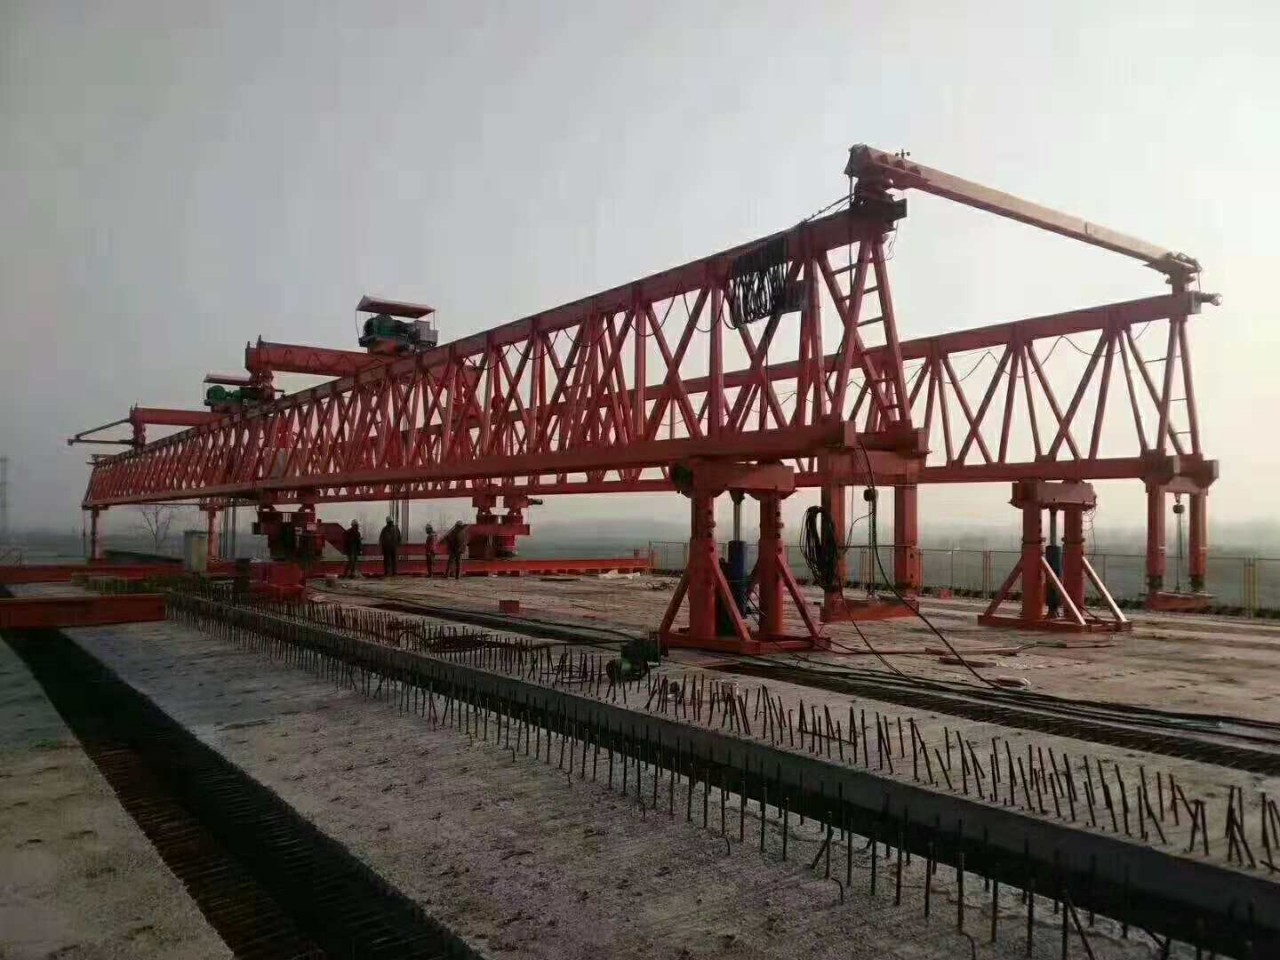 架橋機   架橋機械  架橋設備  定製架橋機  坡度架橋機 公路鐵路架橋機  二手架橋機 二手路橋設備